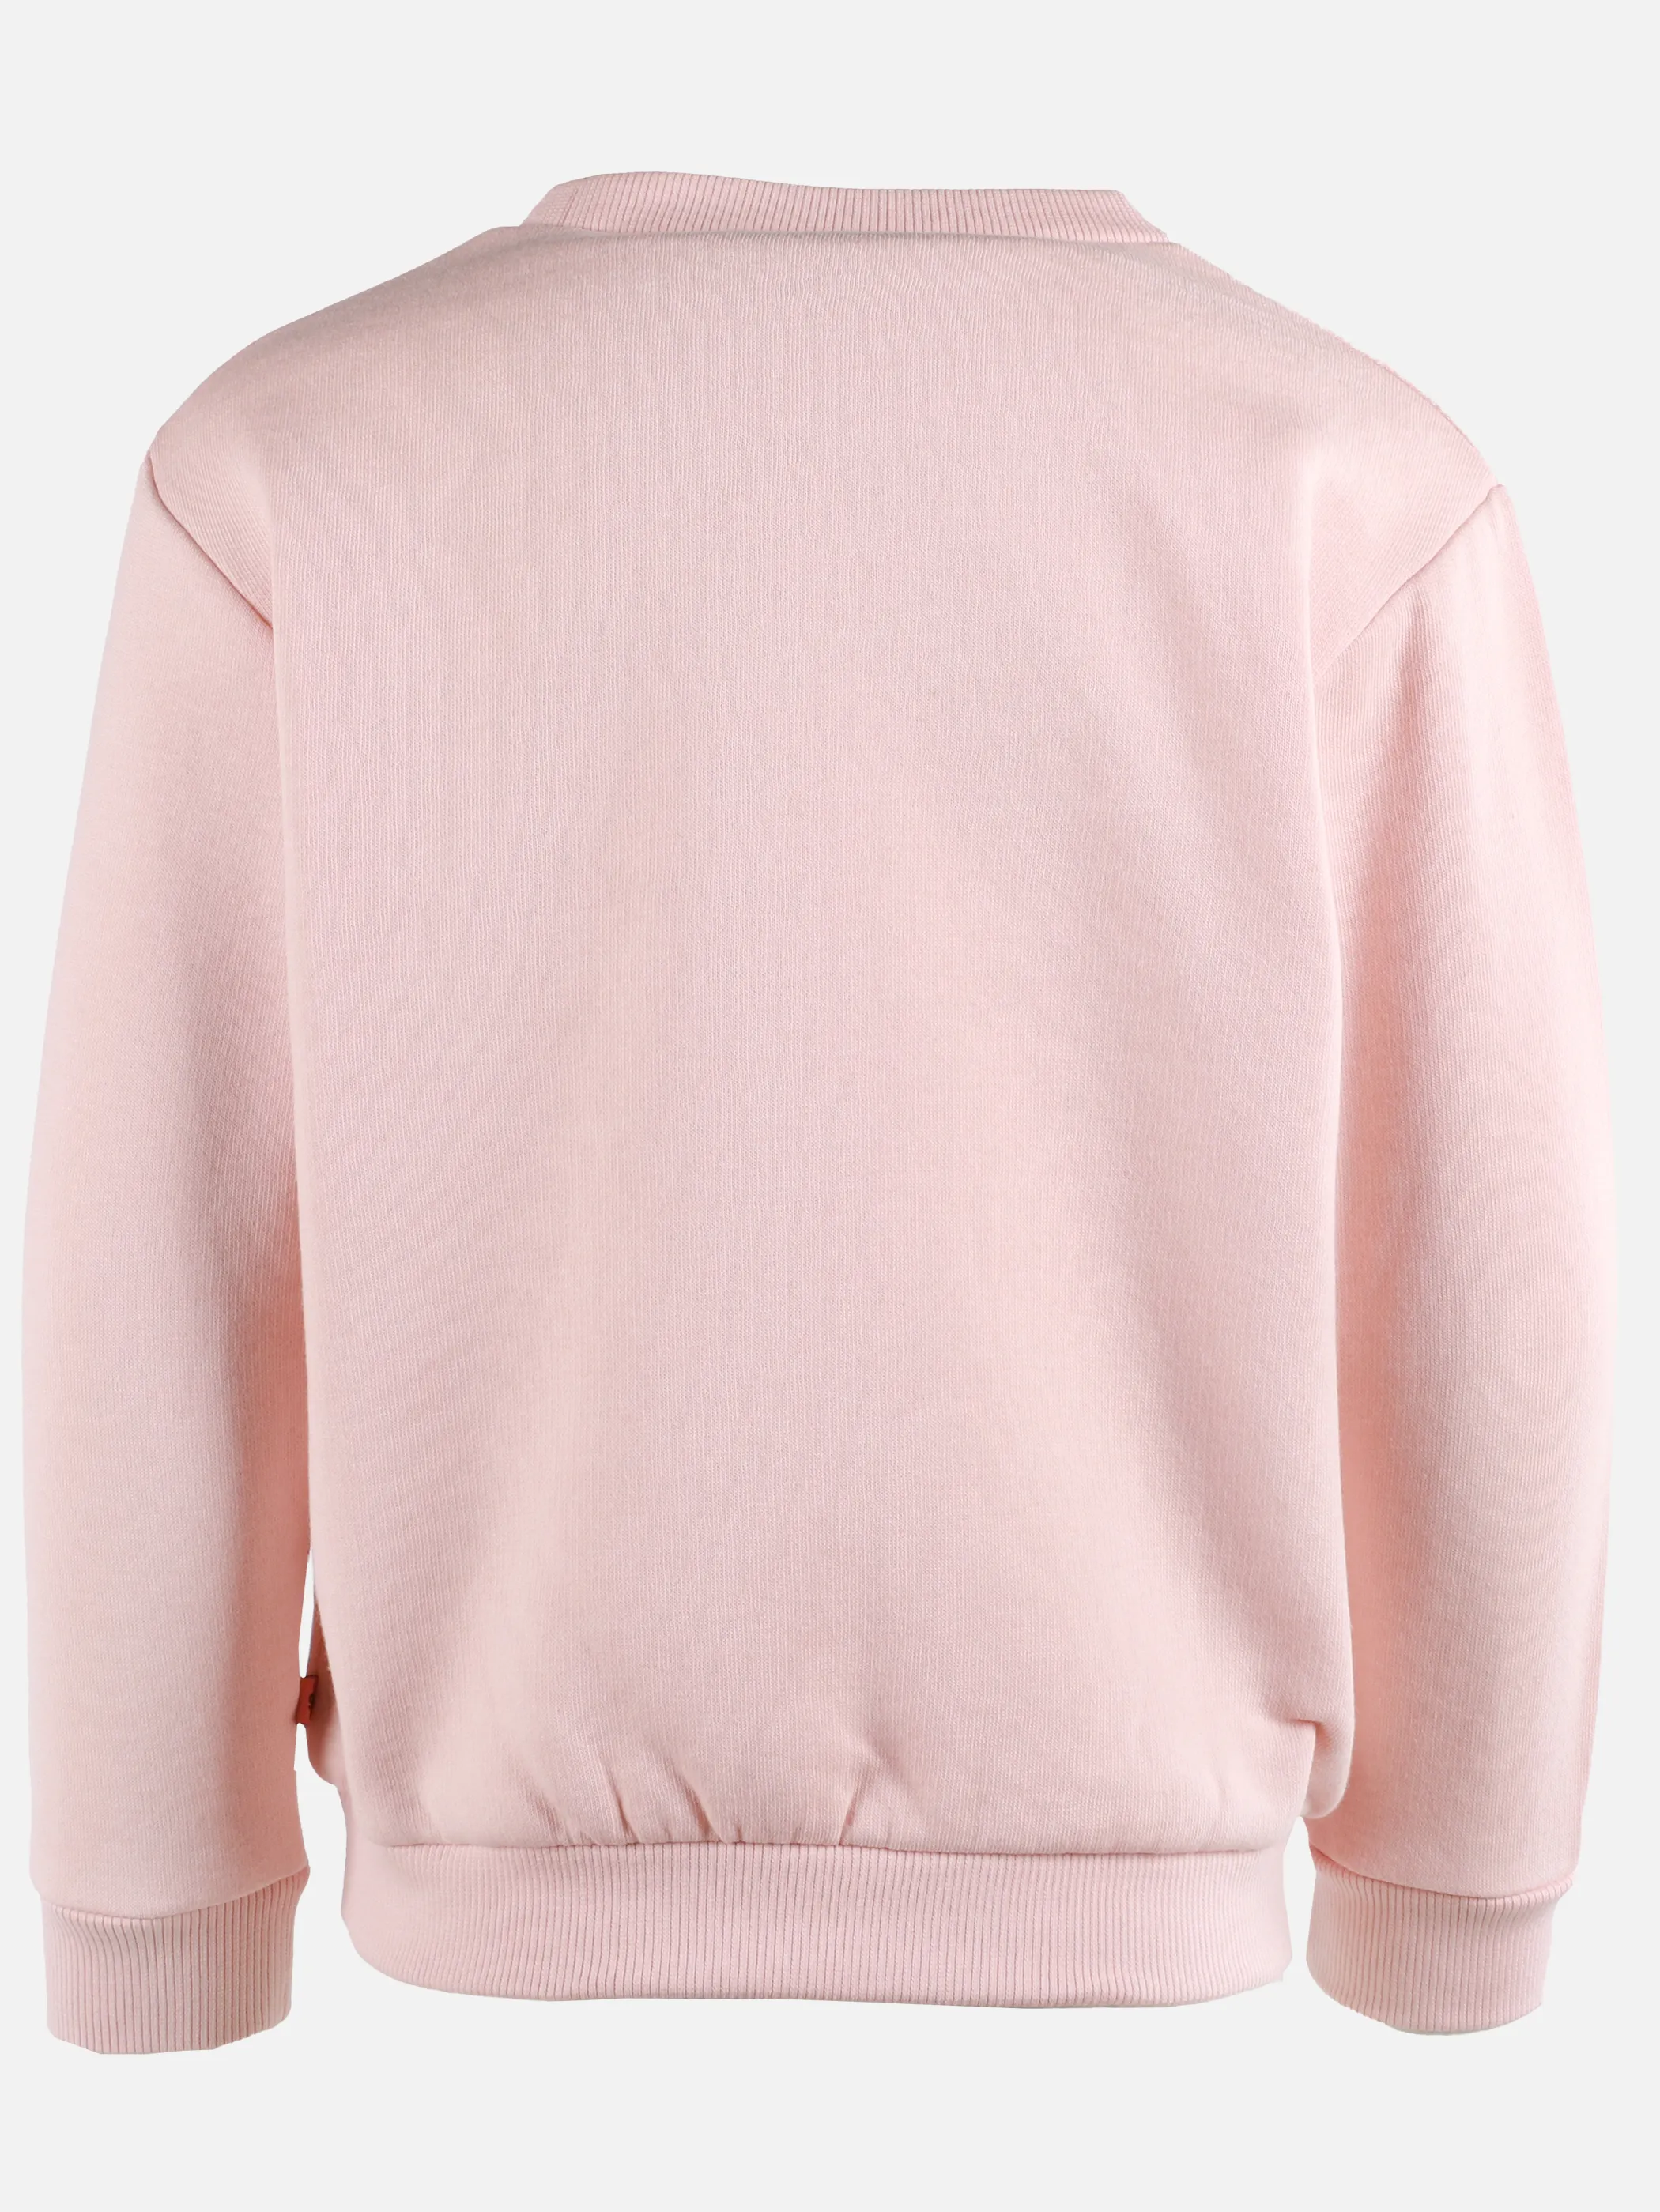 Stop + Go KM Sweatshirt mit wendbarem Einhorn in rosa Rosa 900300 ROSA 2